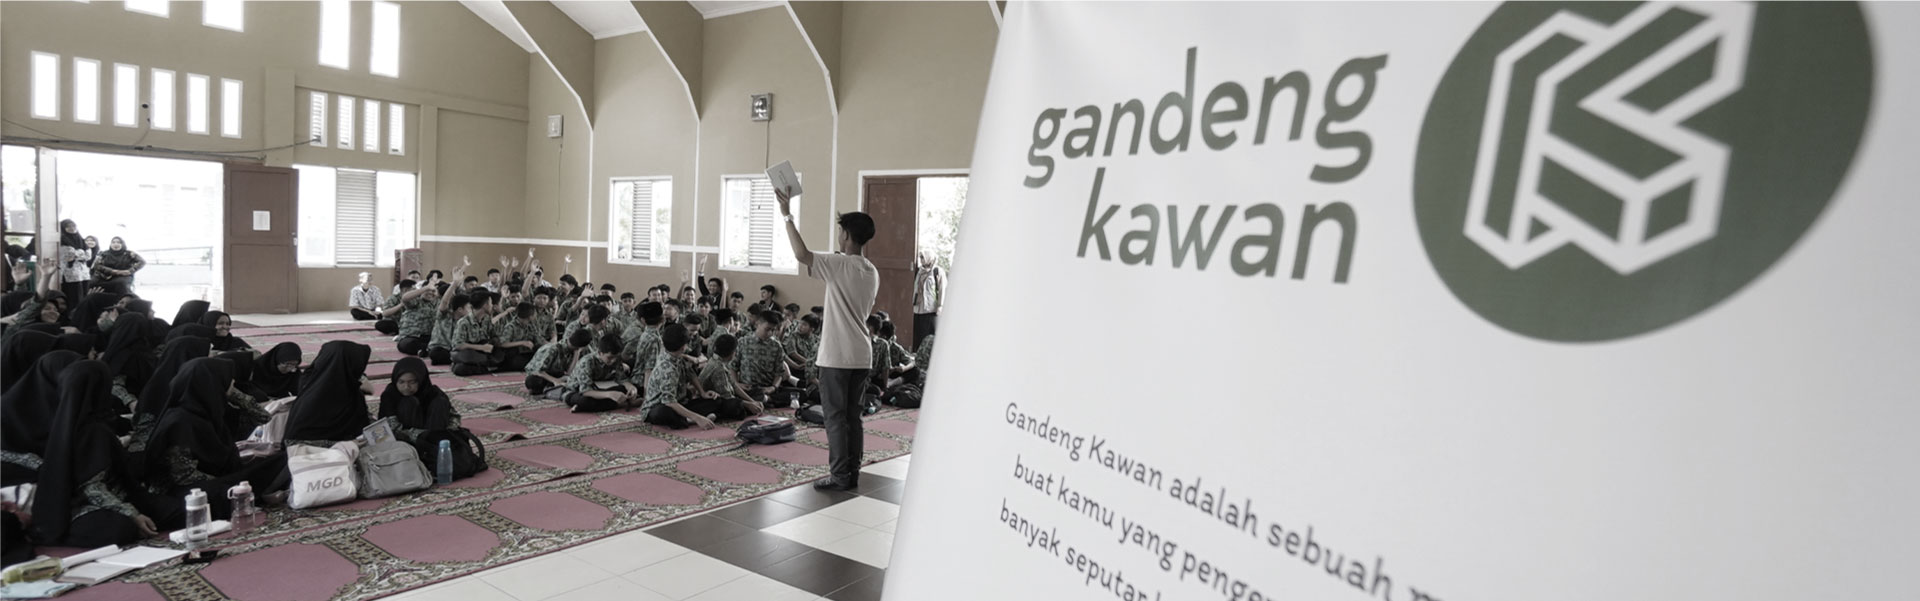 mental health awareness teenager in Indonesia cita sehat